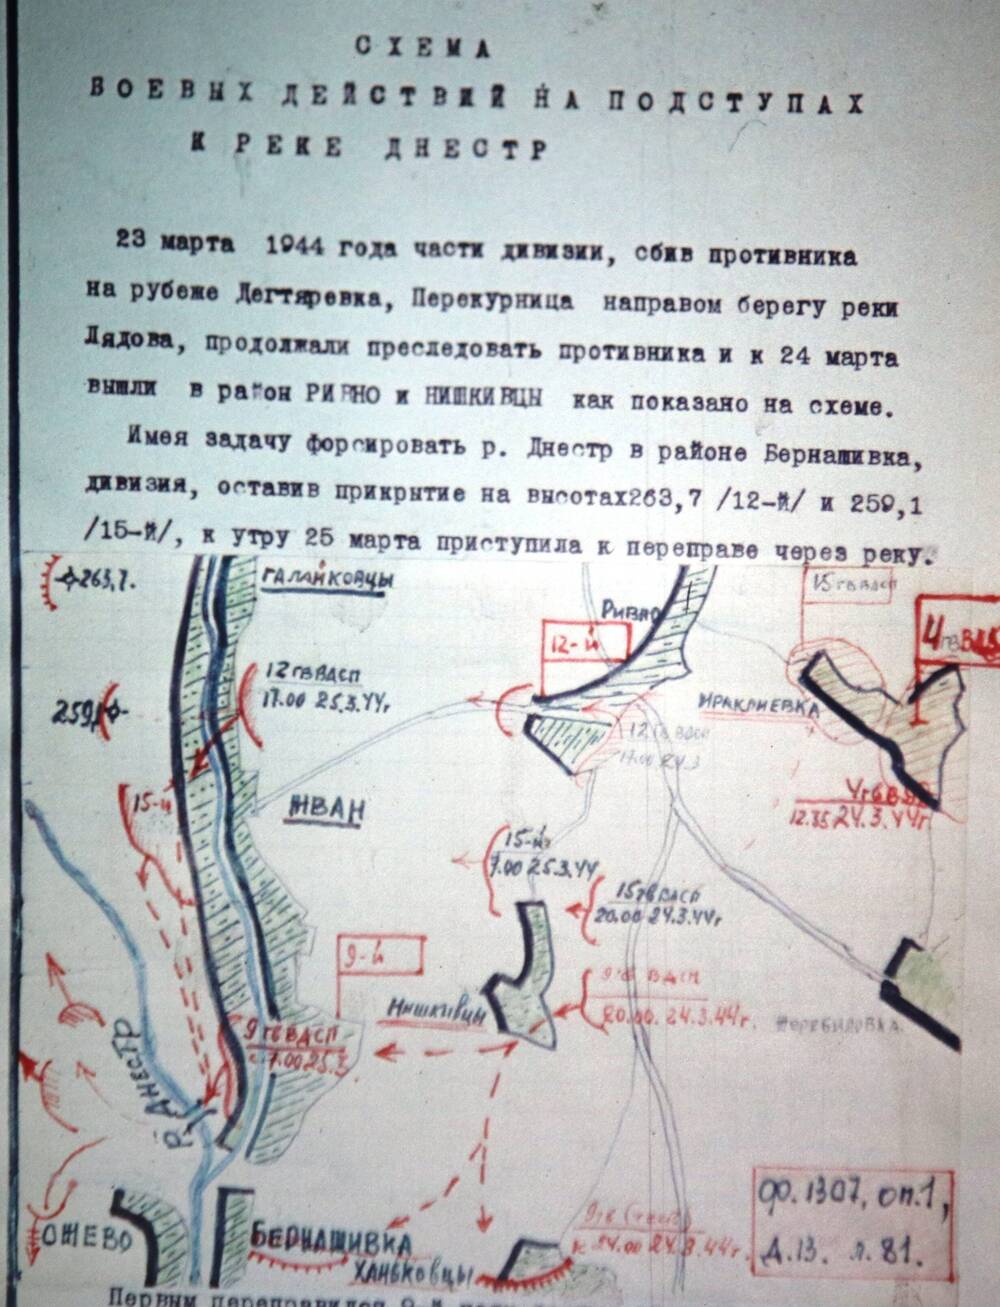 Слайд пластмассовый, на котором изображена схема обороны противника на участке прорыва 4-й гв. ВДД на СЗФ.